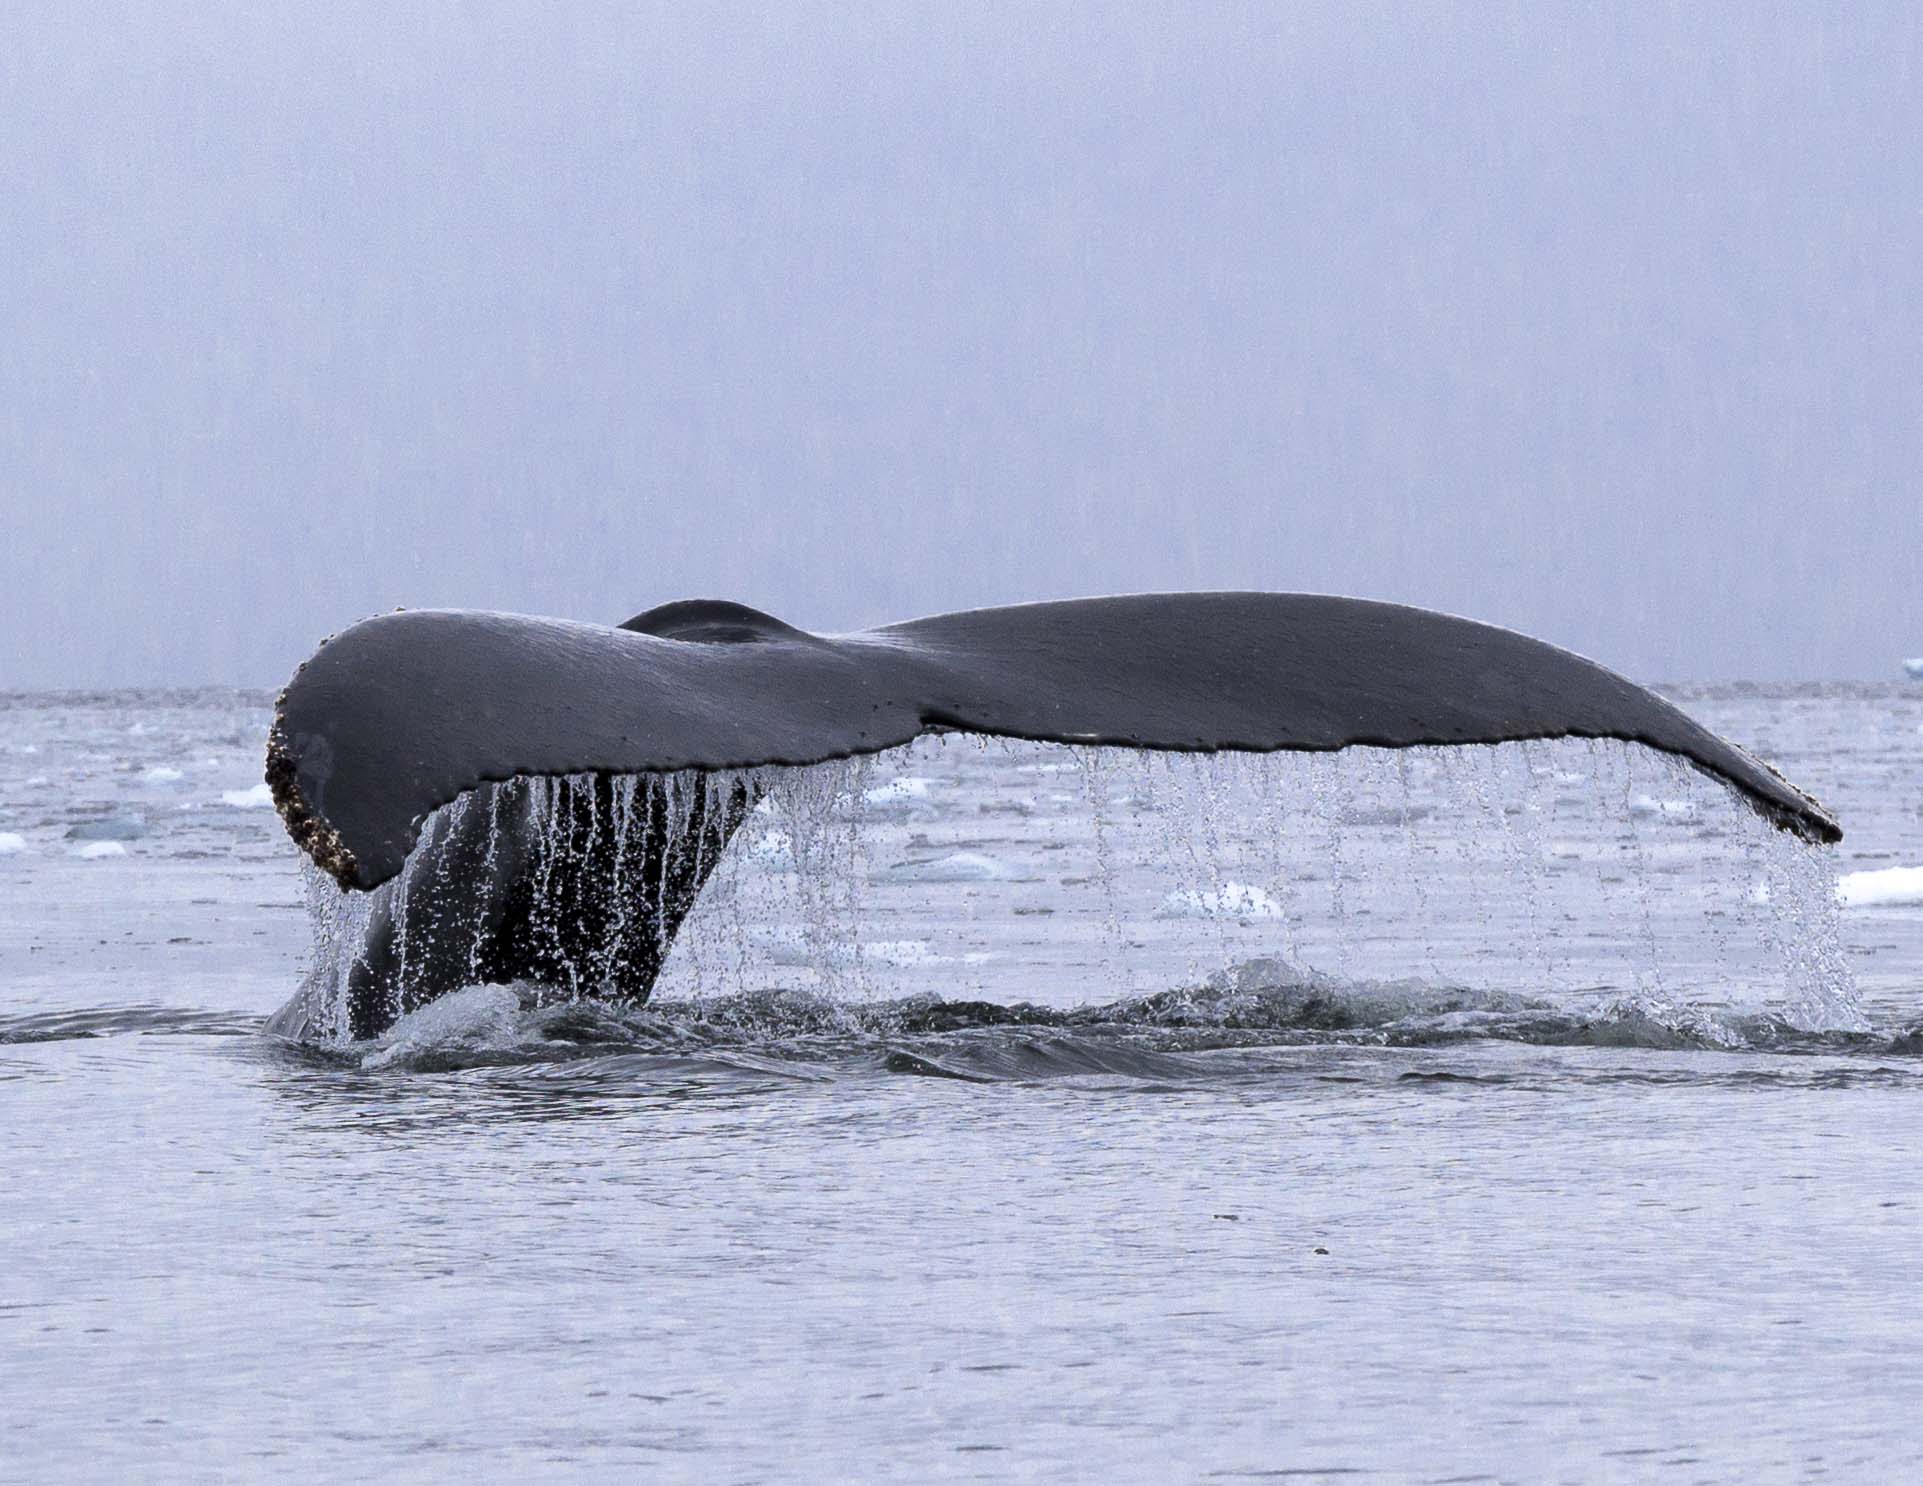 Whale Tail, copyright © Joe Whittington